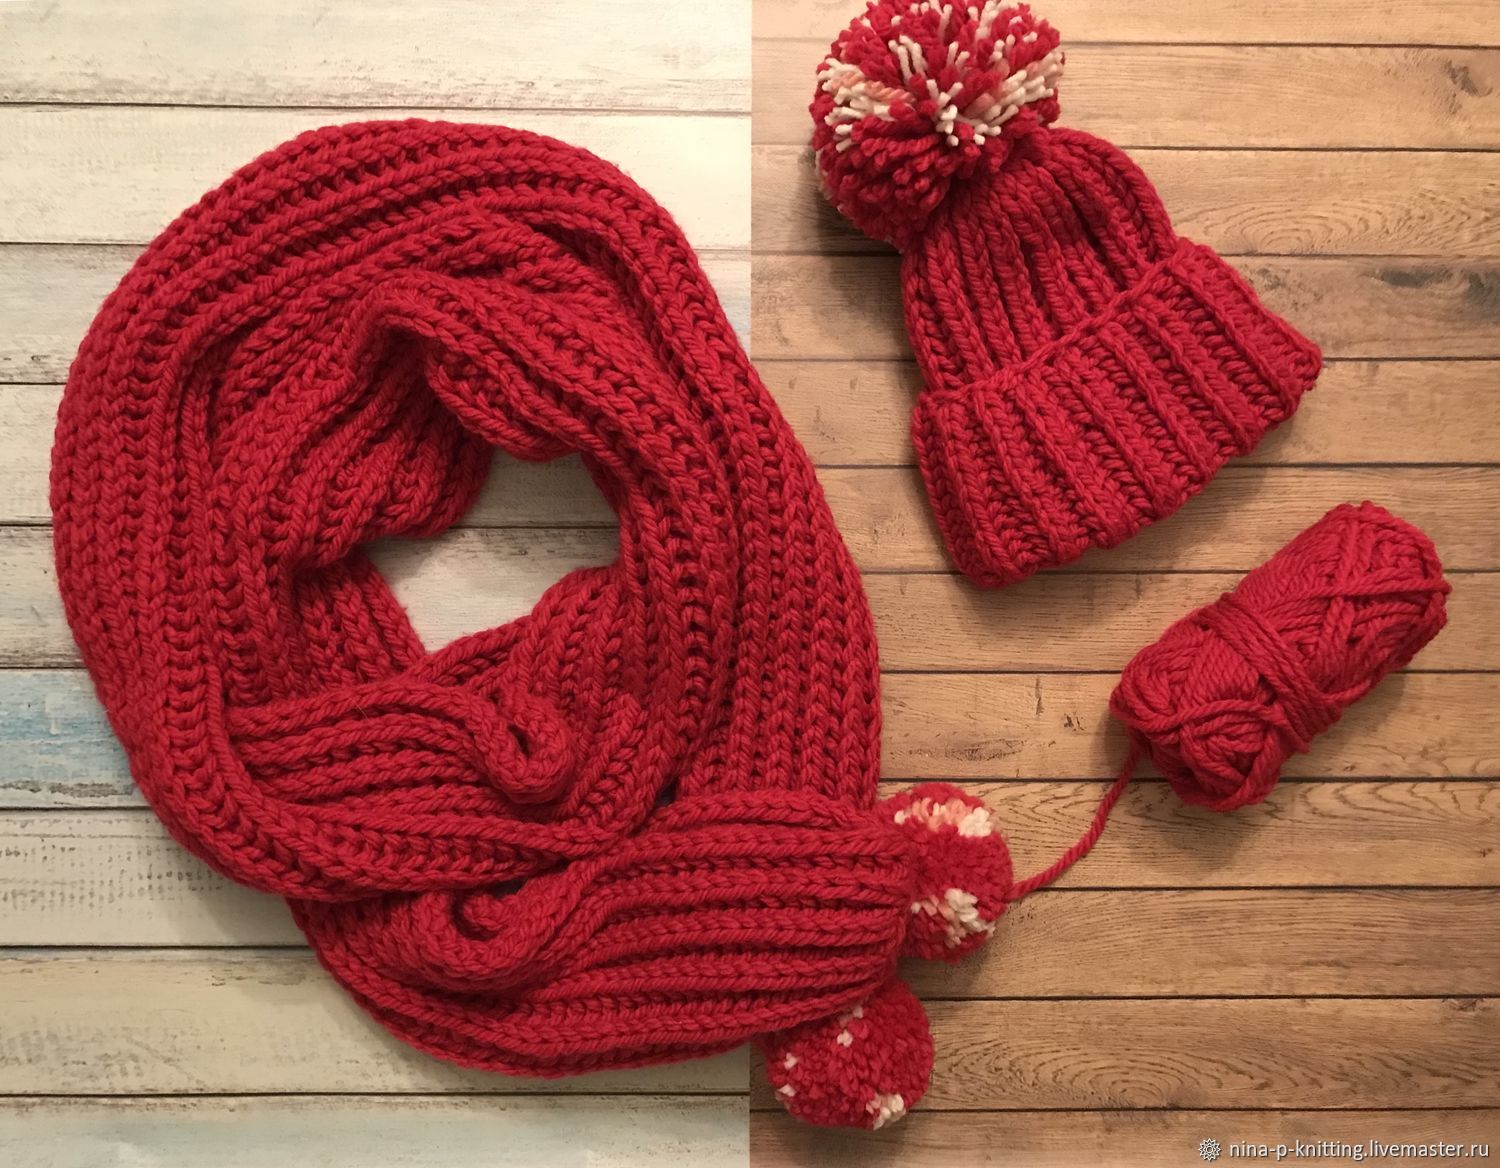 Английская вязание шарфа. Красный вязаный шарф. Красный шарф крупной вязки. Оригинальные вязаные шарфы. Шарф с помпонами.